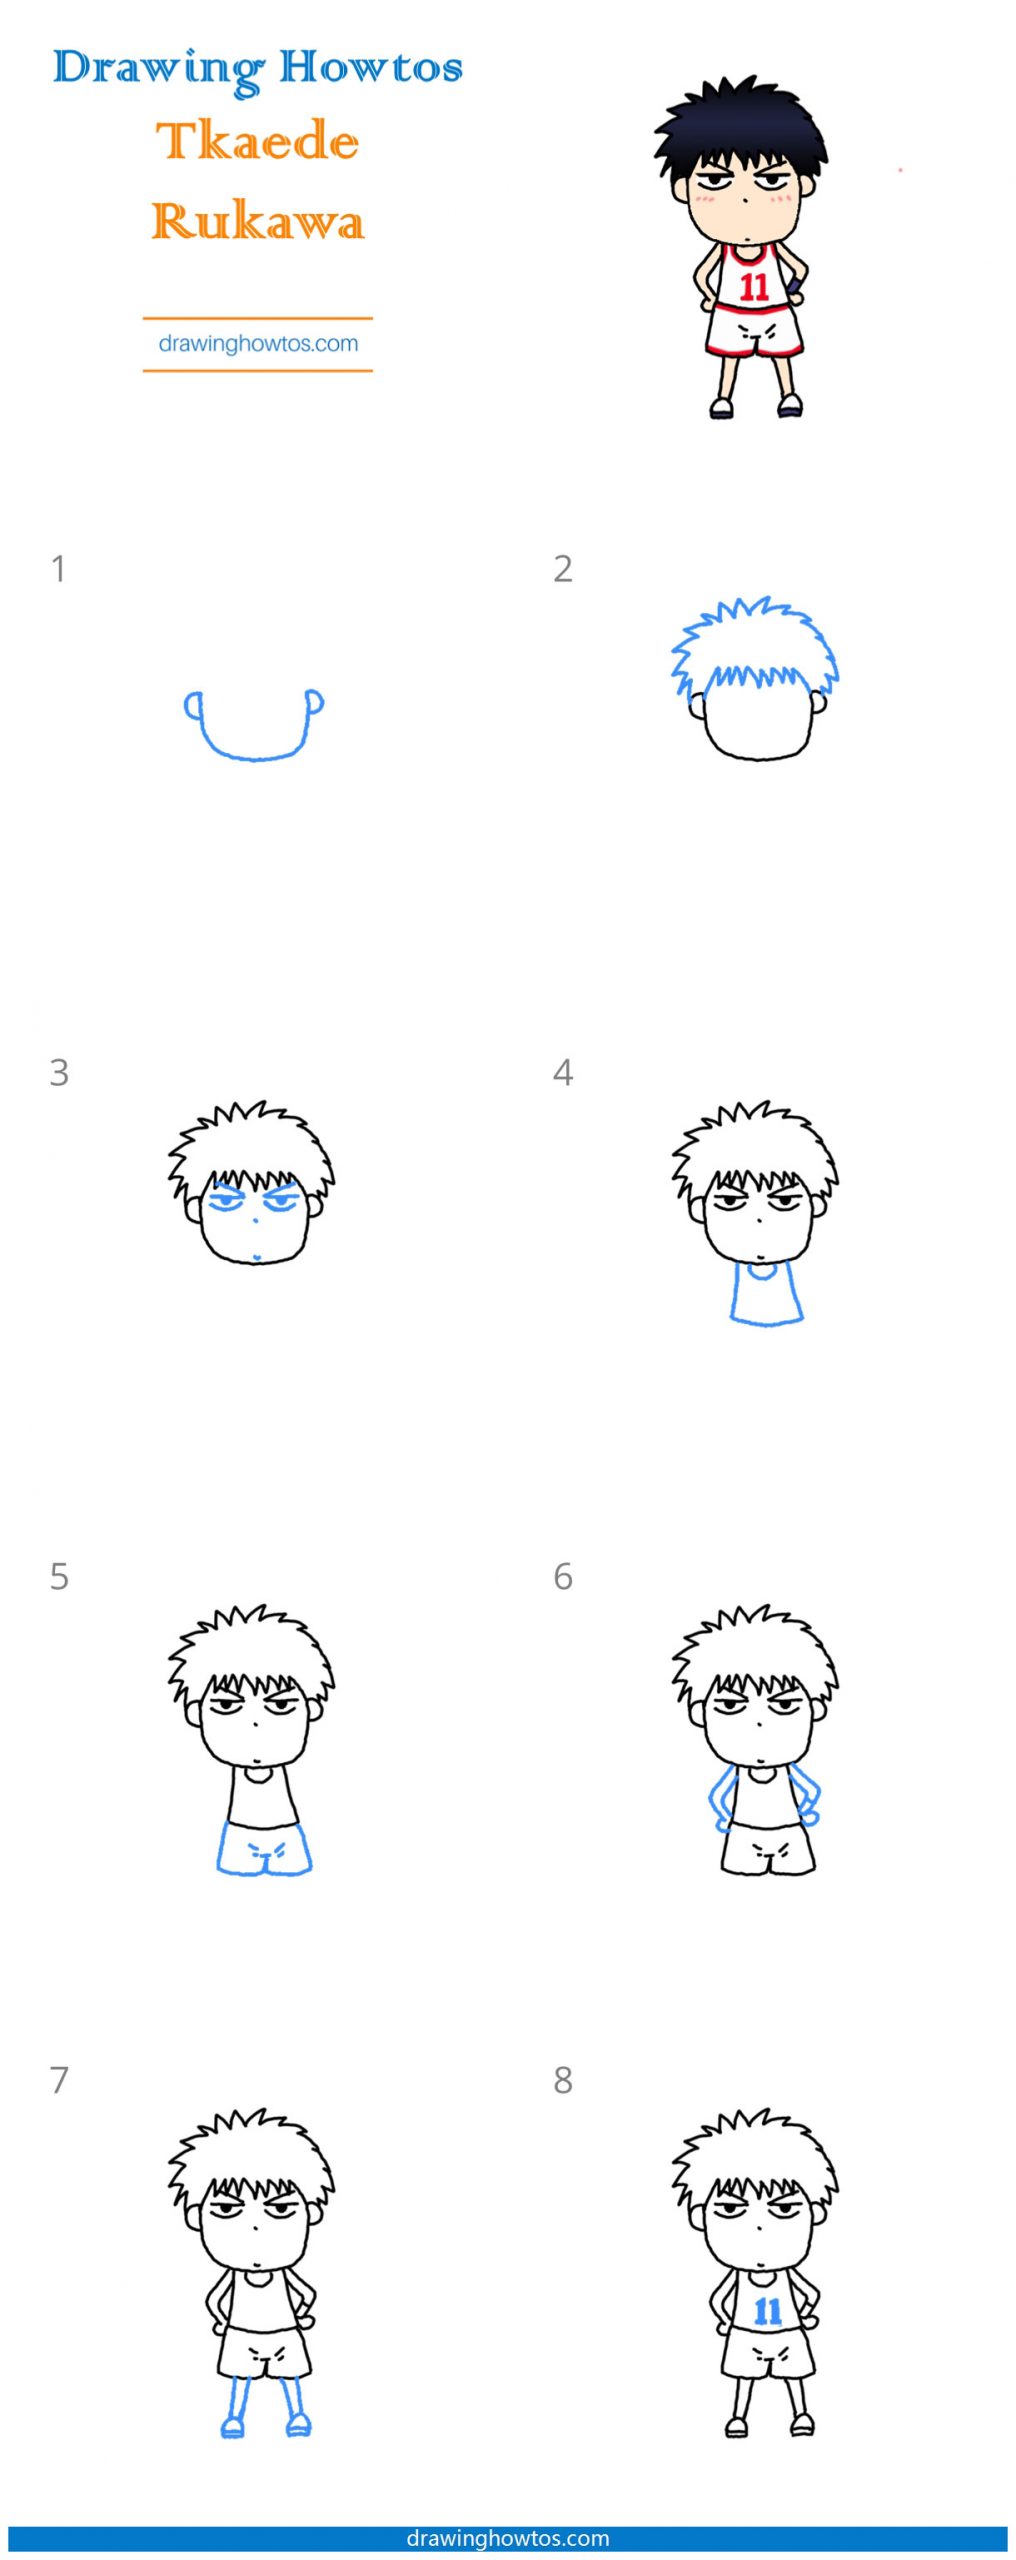 How to Draw Tkaeda Rukawa Step by Step